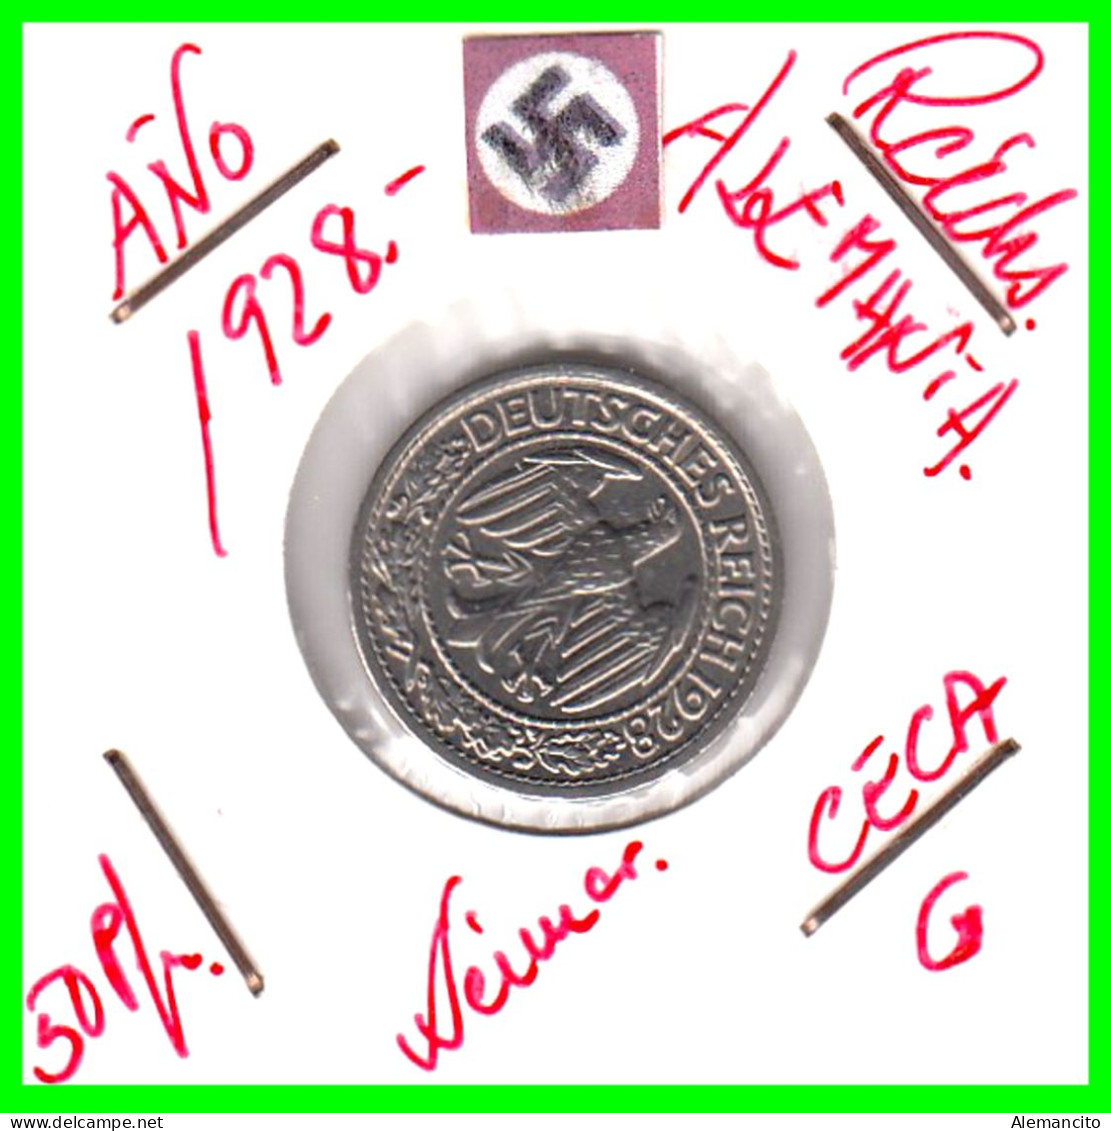 GERMANY REPÚBLICA DE WEIMAR 50 REICHSPFENNIG ( 1928 CECA - G )  (REICHSPFENNIG KM # 40 - 50 Renten- & 50 Reichspfennig